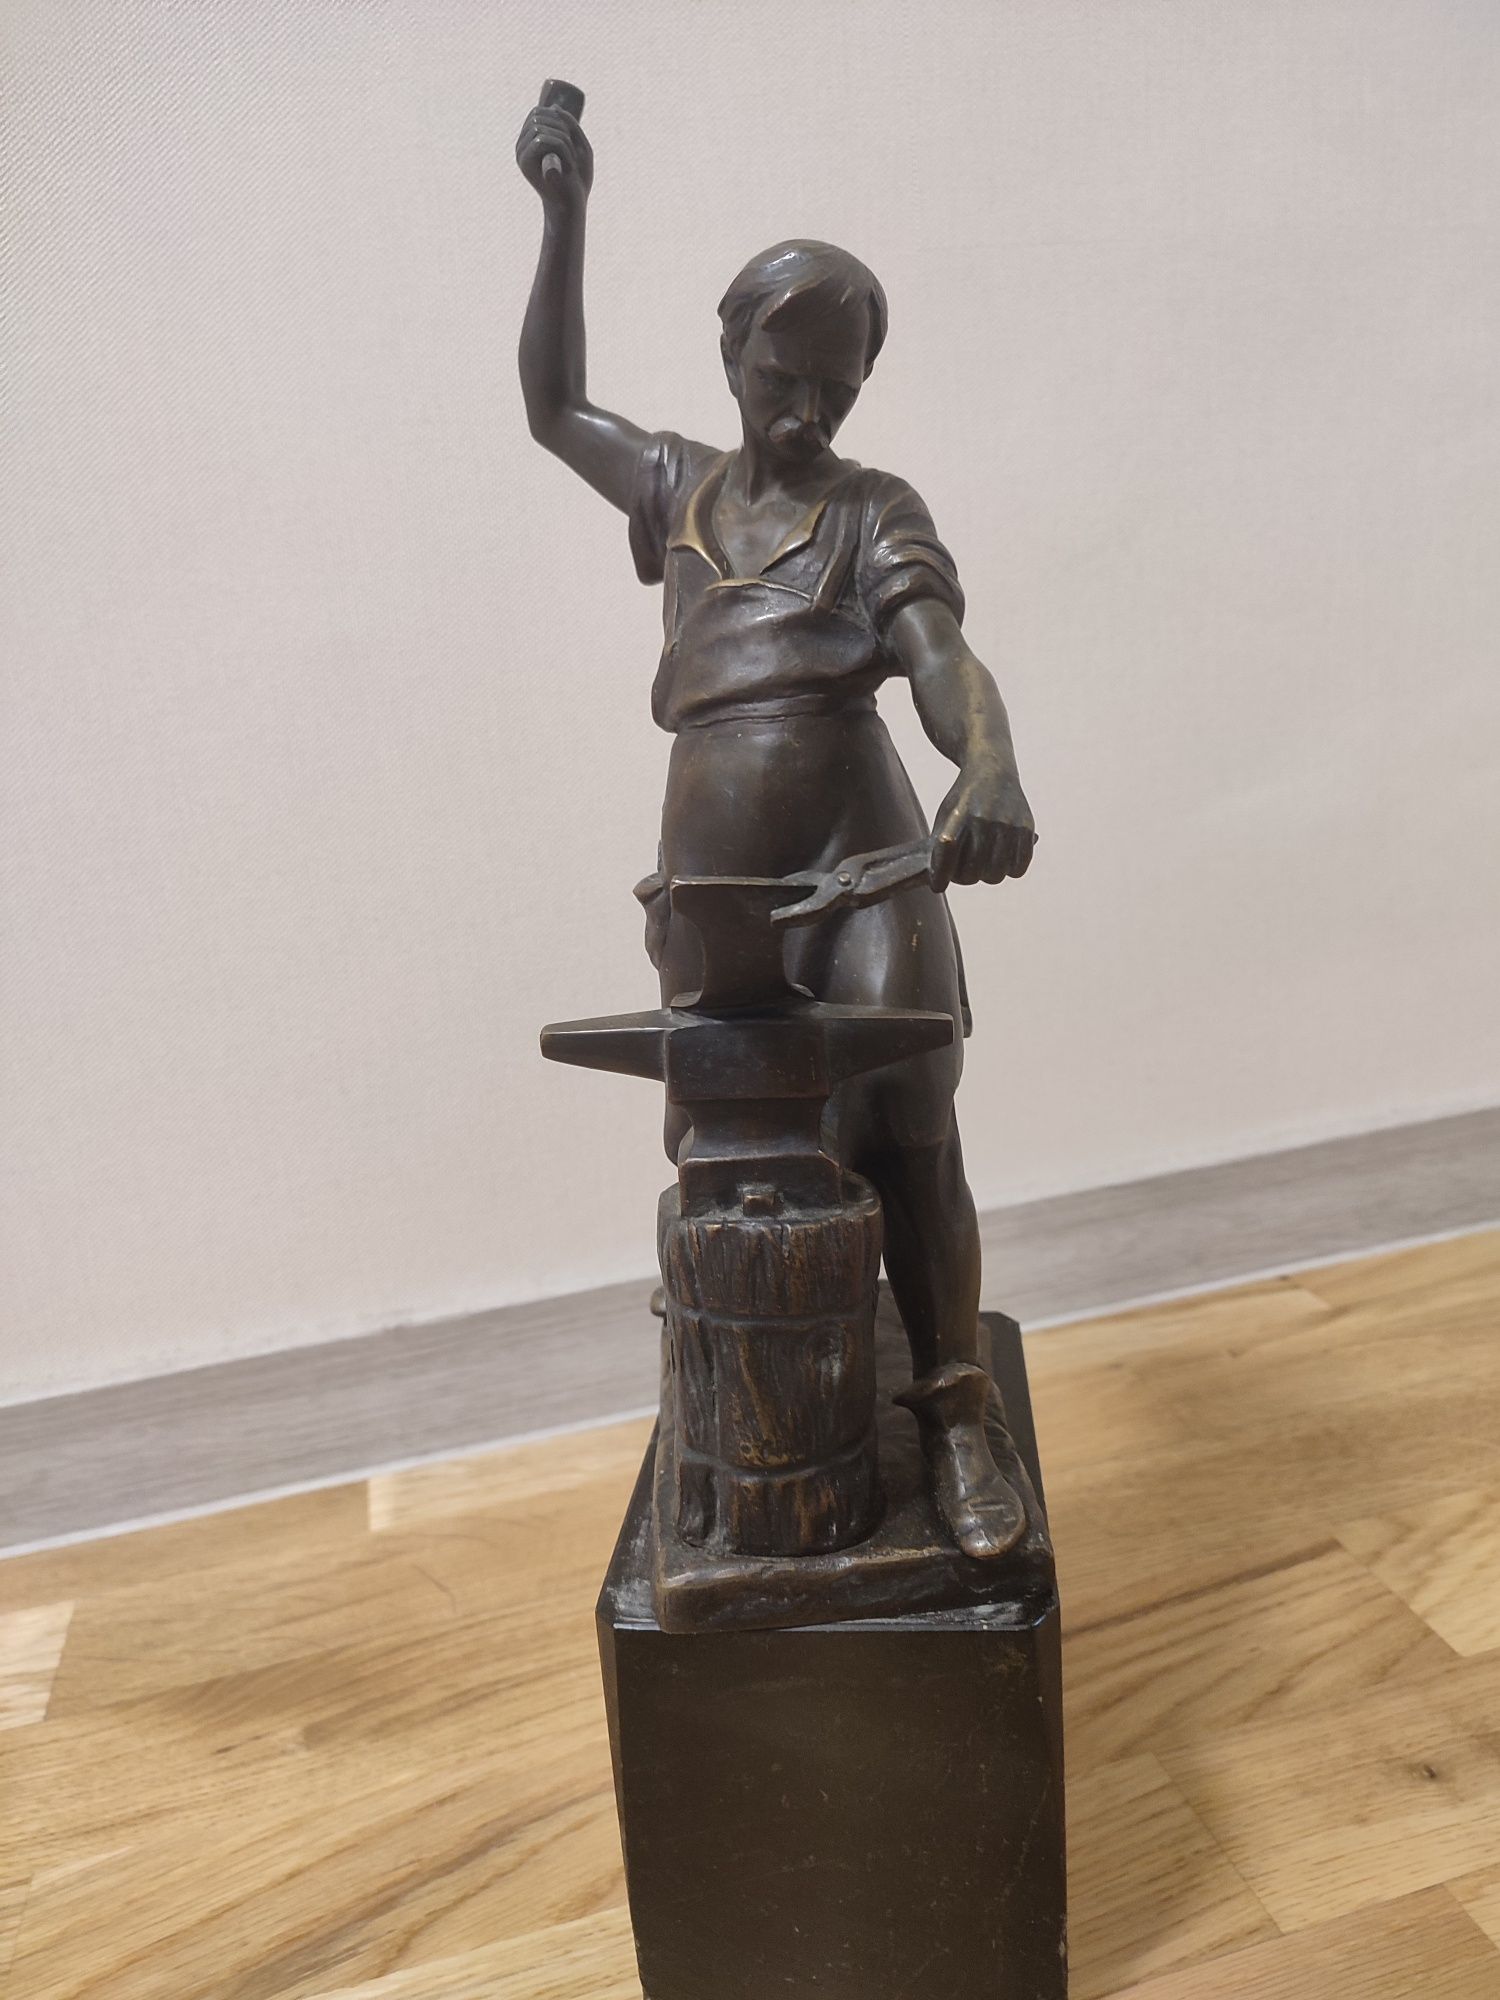 Бронзовая скульптура Gotthilf Jaeger "Blacksmith"  "Кузнец"